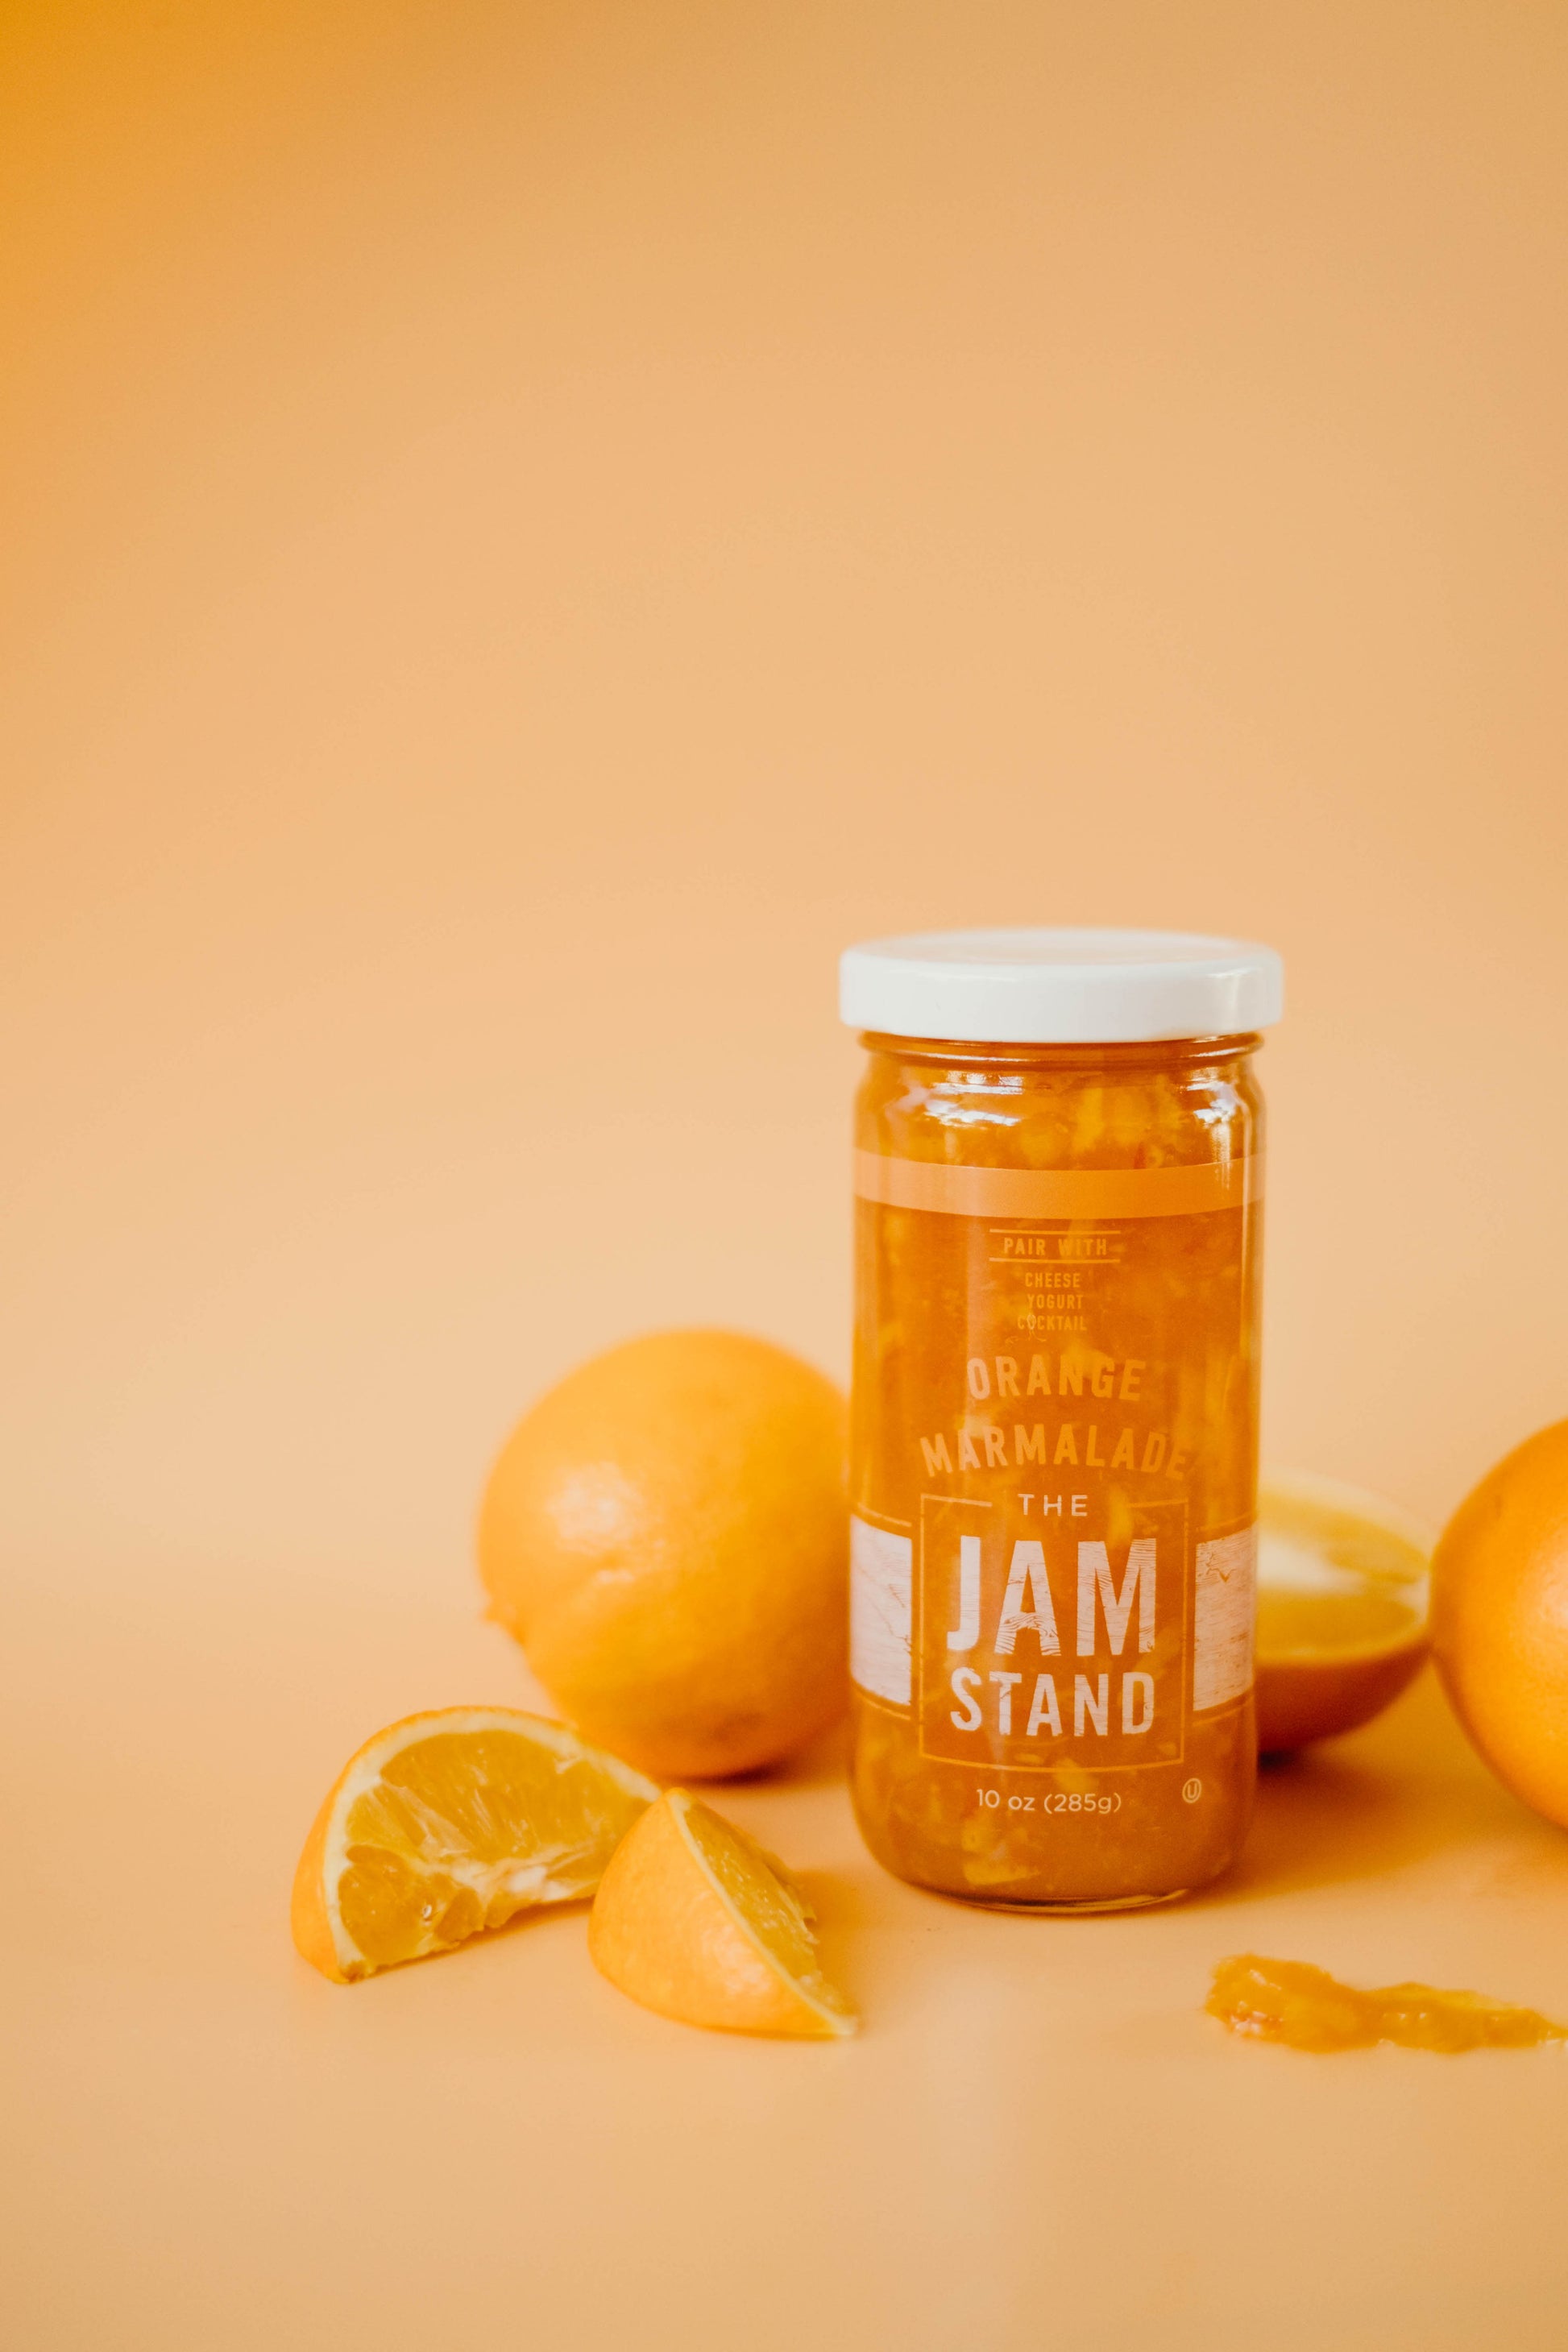 The Jam Stand: Orange Marmalade